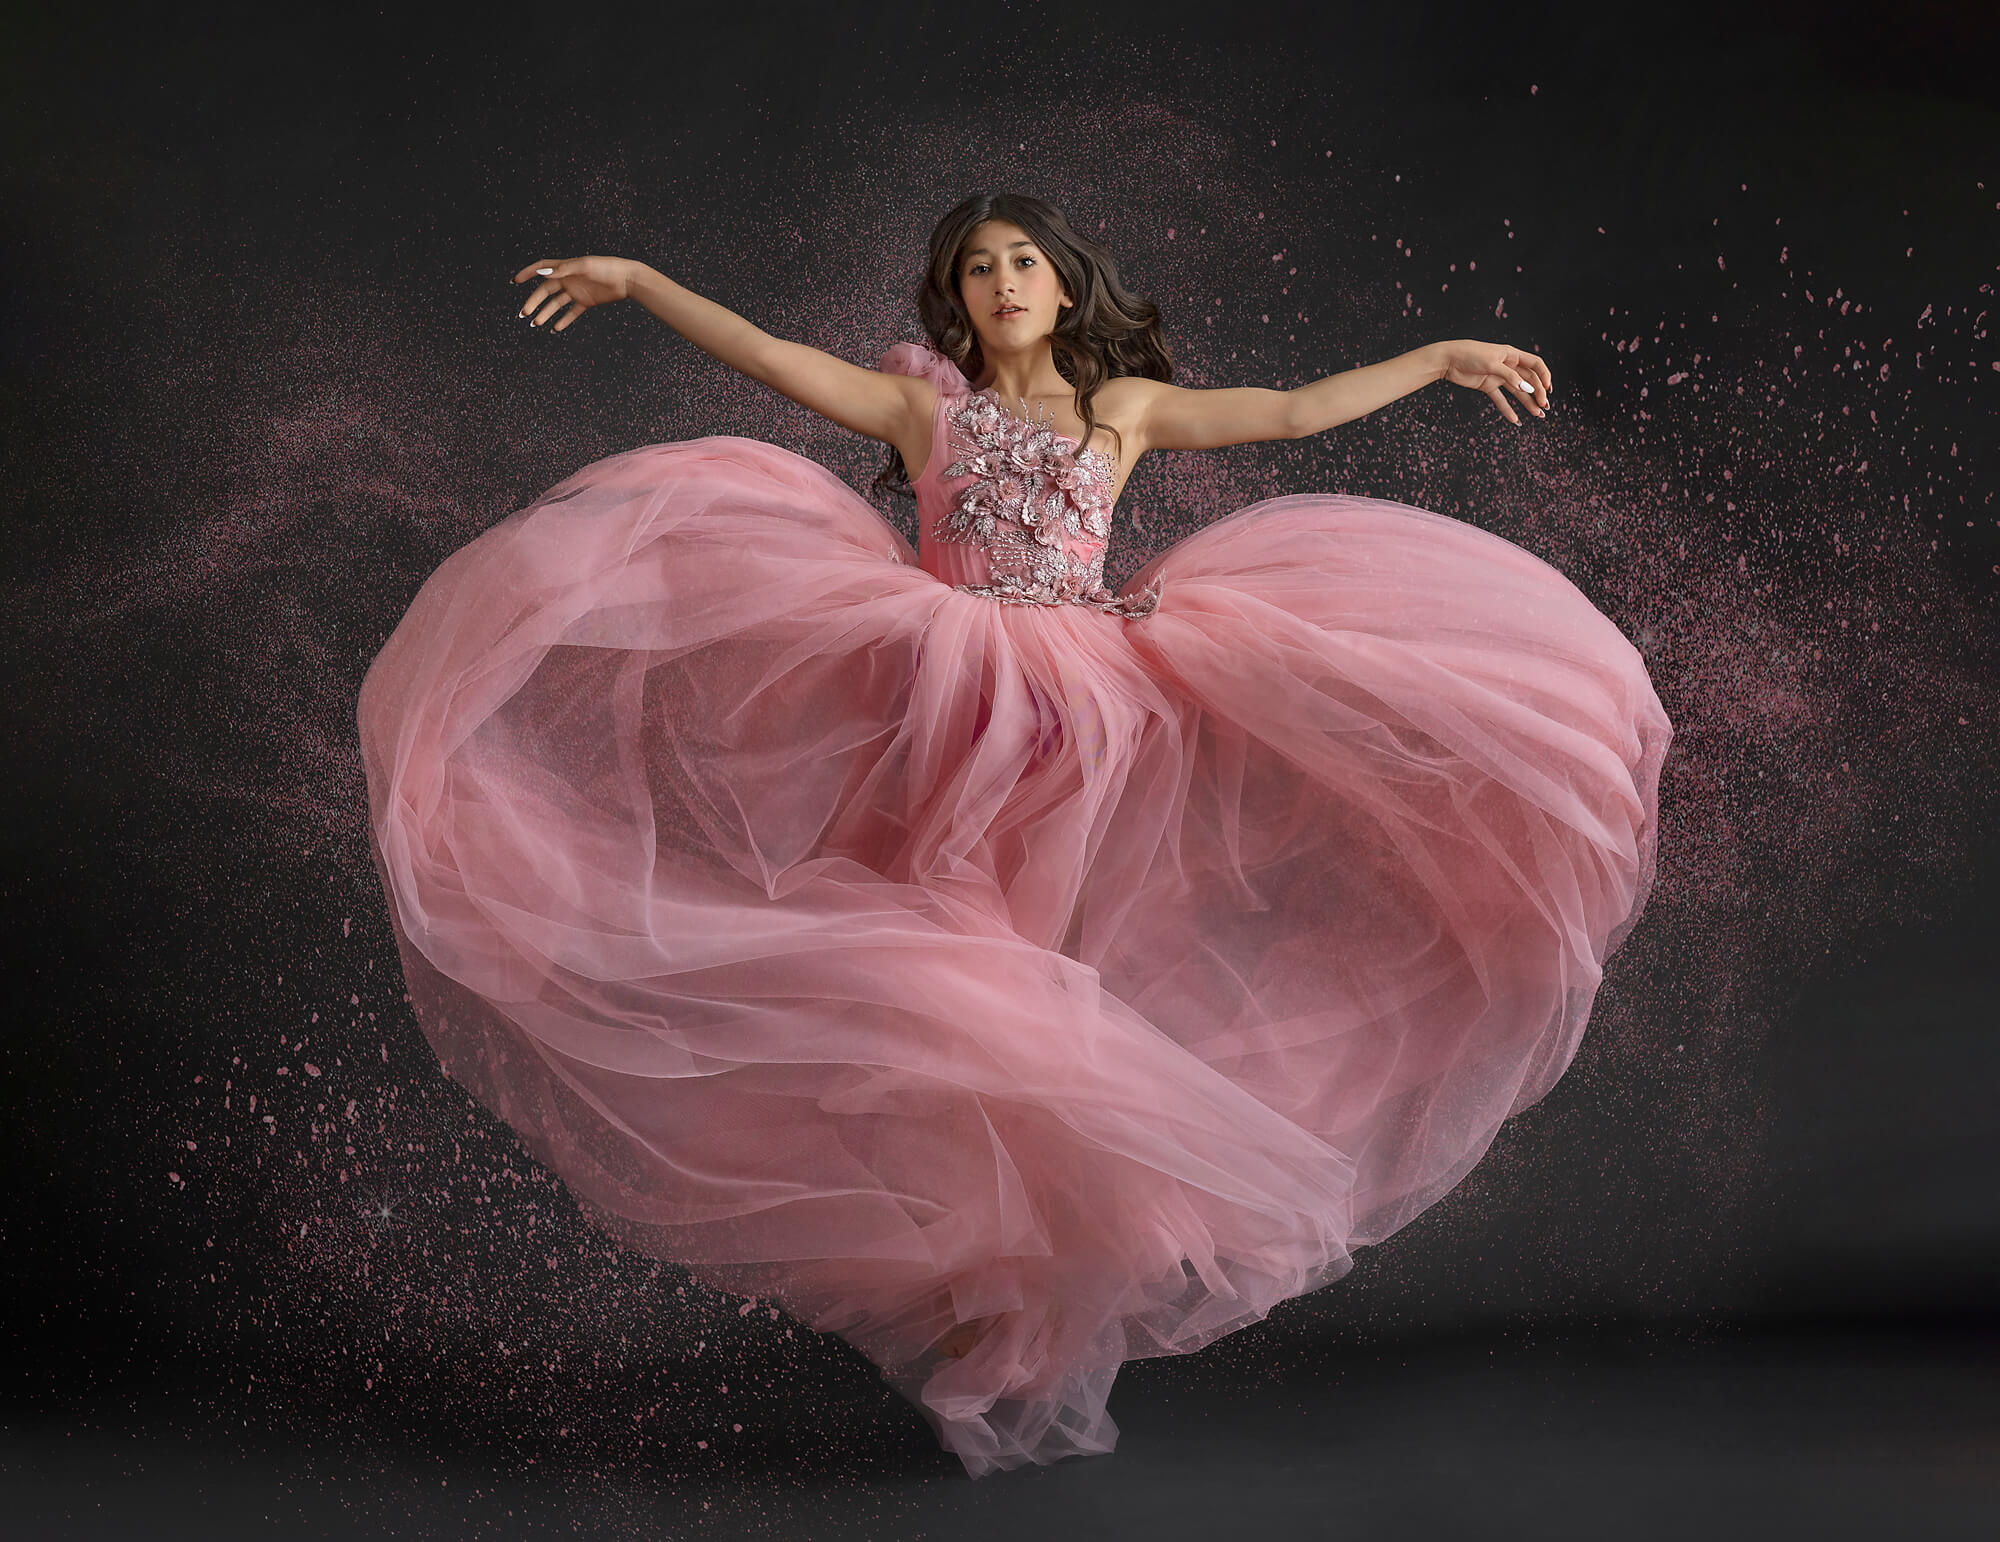 Tween girl jumping in pink dress in photo studio